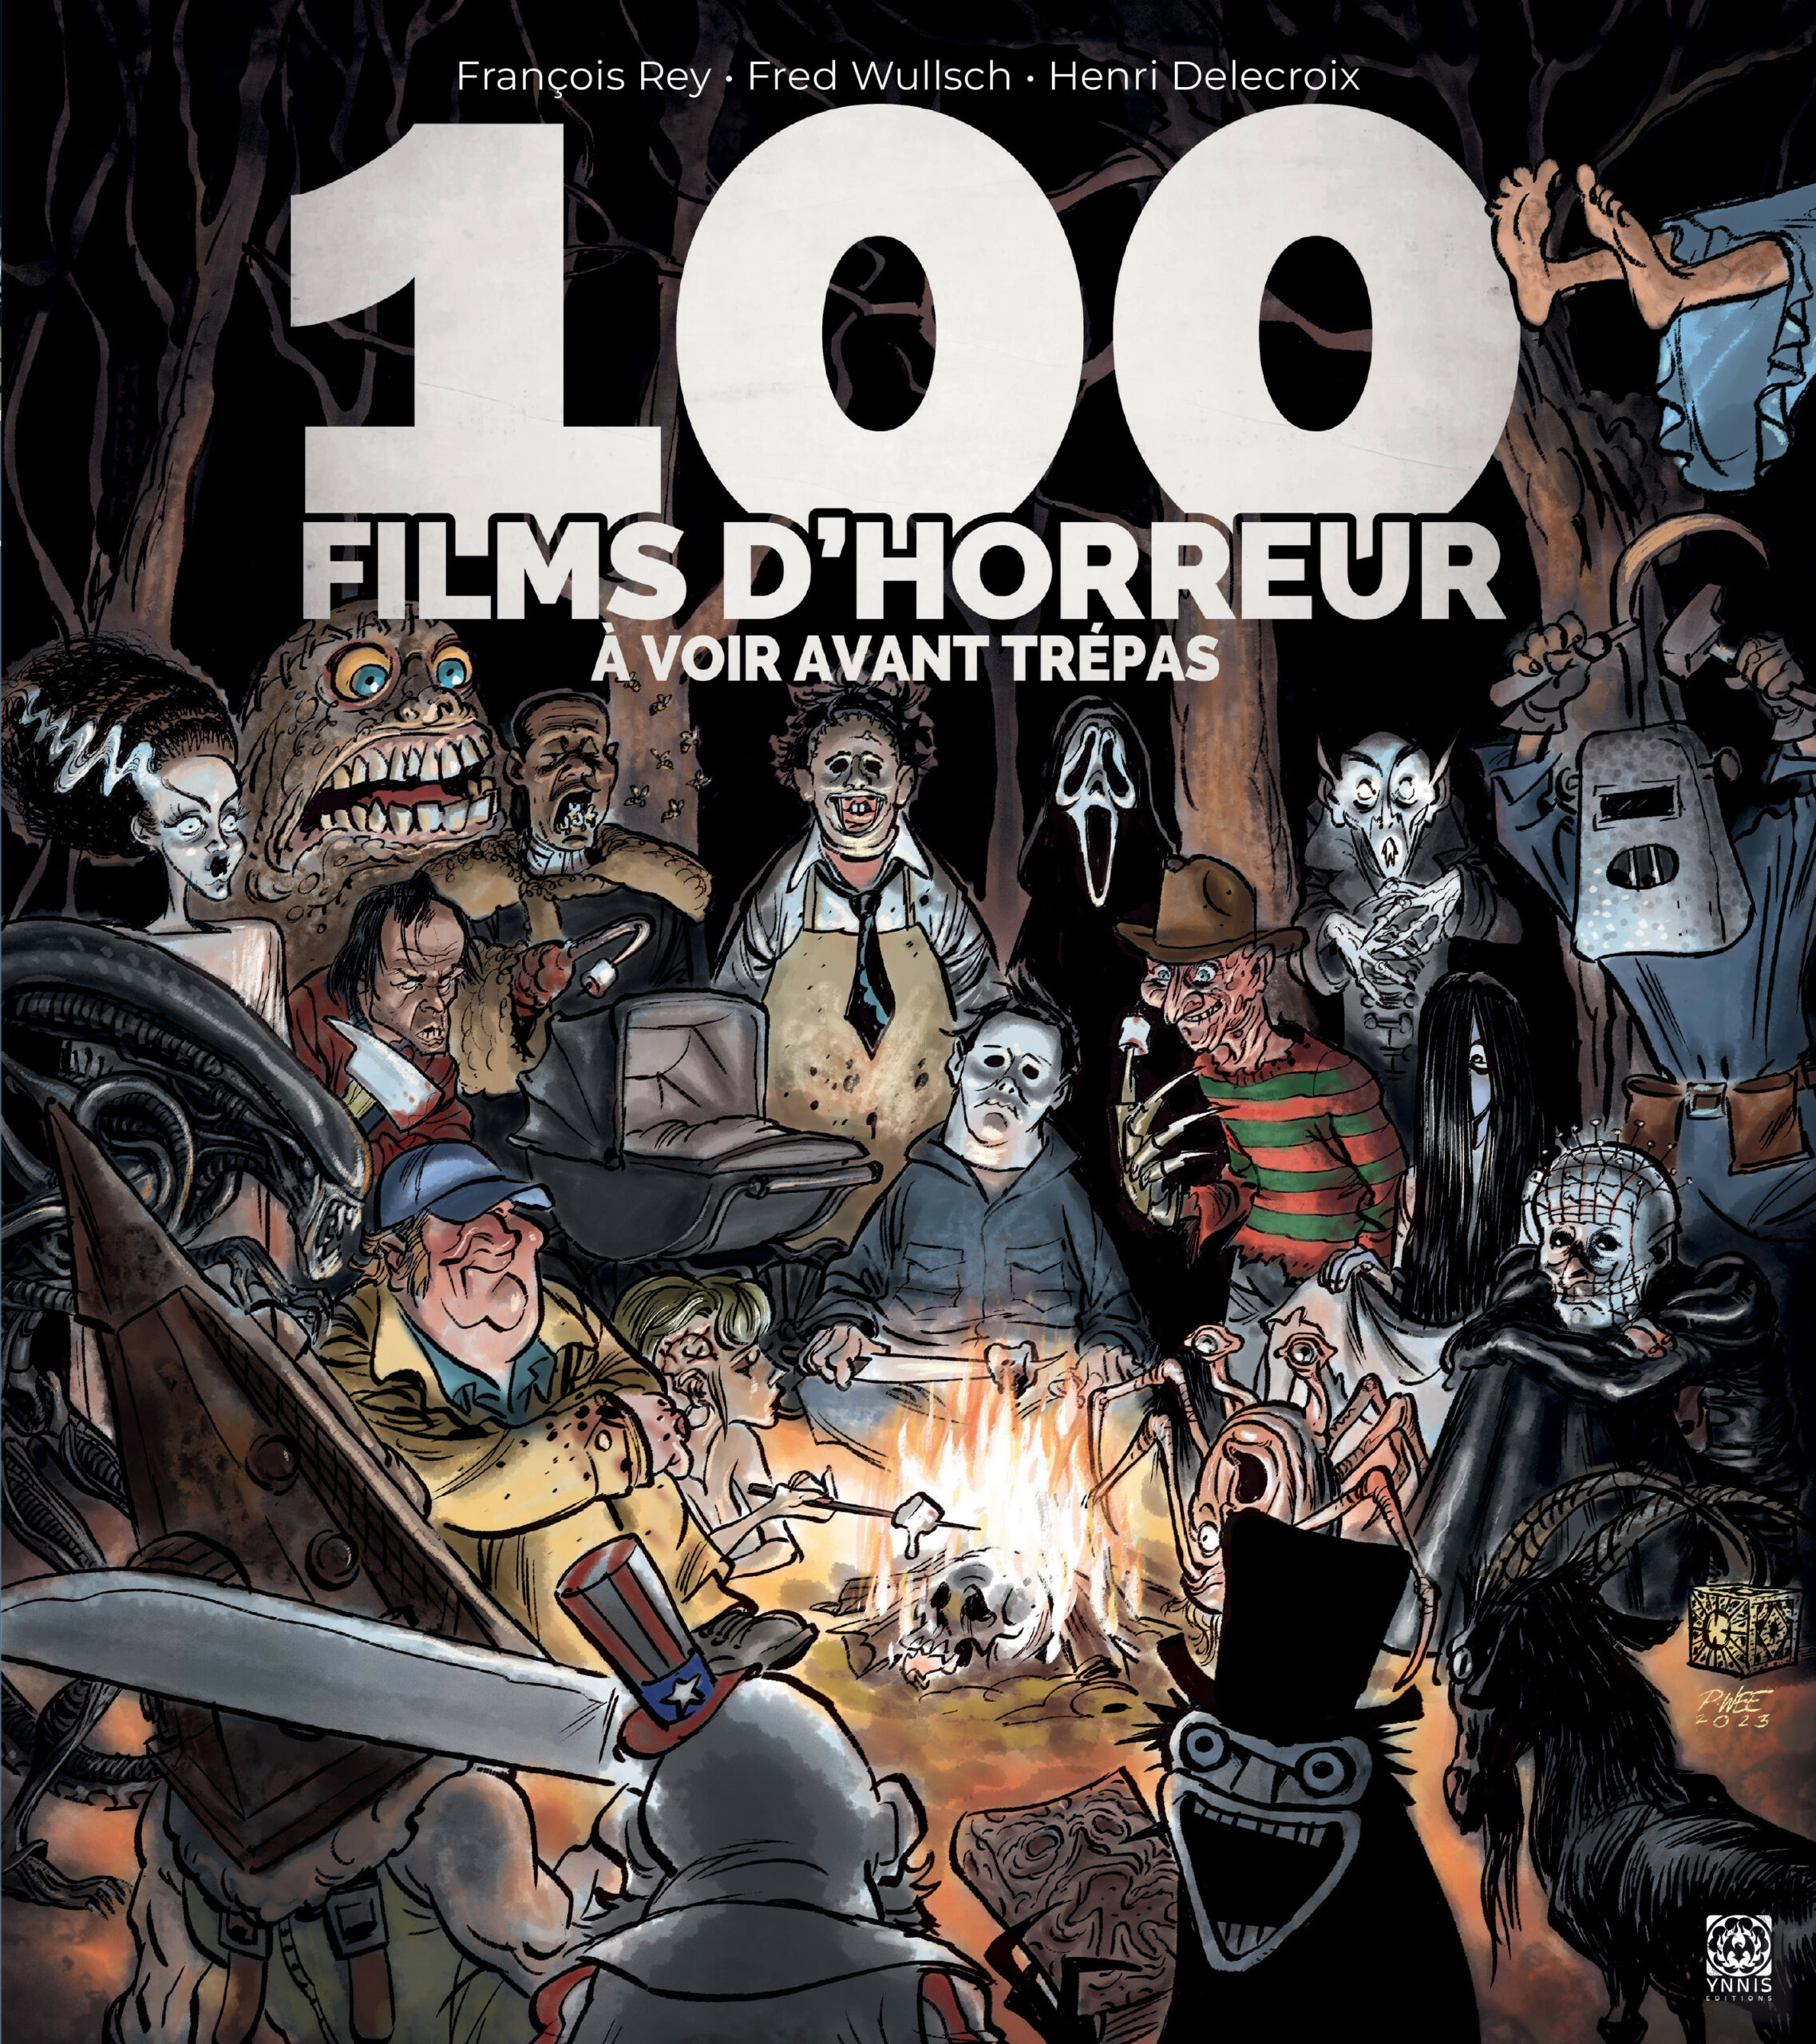 Poster à Gratter 100 Films d'Horreur à Voir dans sa Vie – Opari